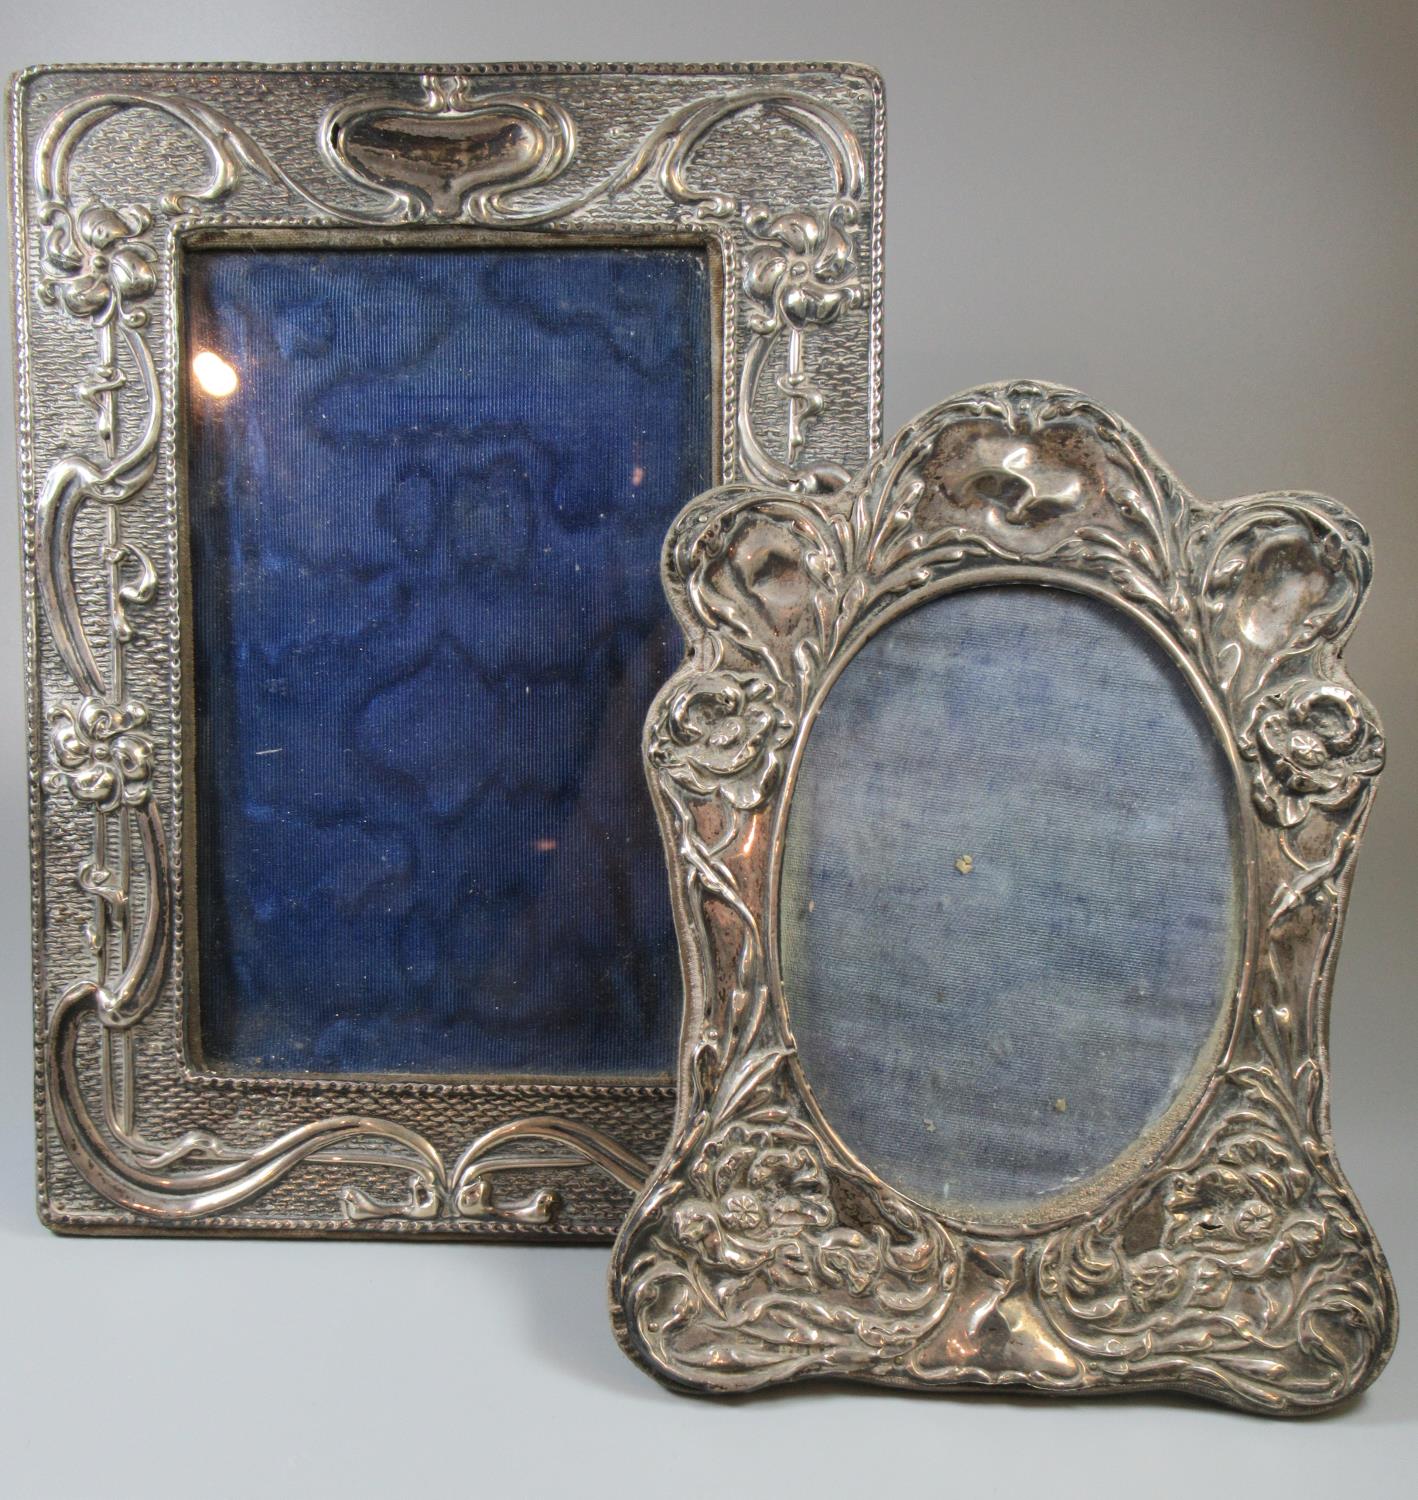 Two silver art nouveau picture frames with organic repousse decoration. (2) (B.P. 21% + VAT)